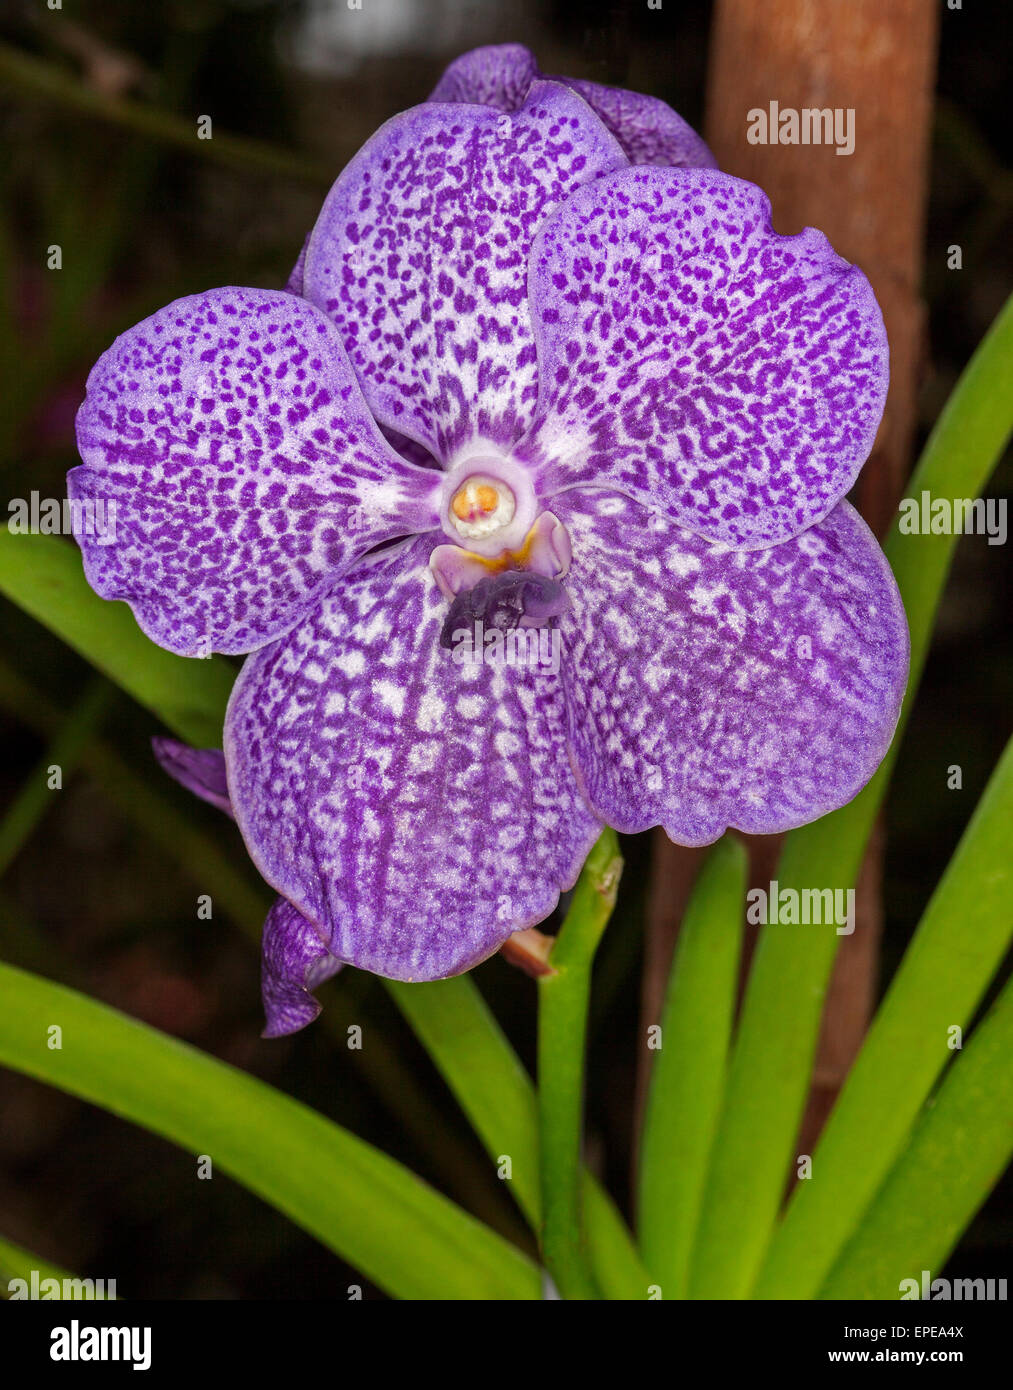 Große, ungewöhnliche und spektakuläre lila / blau-weiß gesprenkelten Blume Orchidee Vanda Coerulea Hybrid ' Arambeen'with grüne Blätter auf dunklem Hintergrund Stockfoto